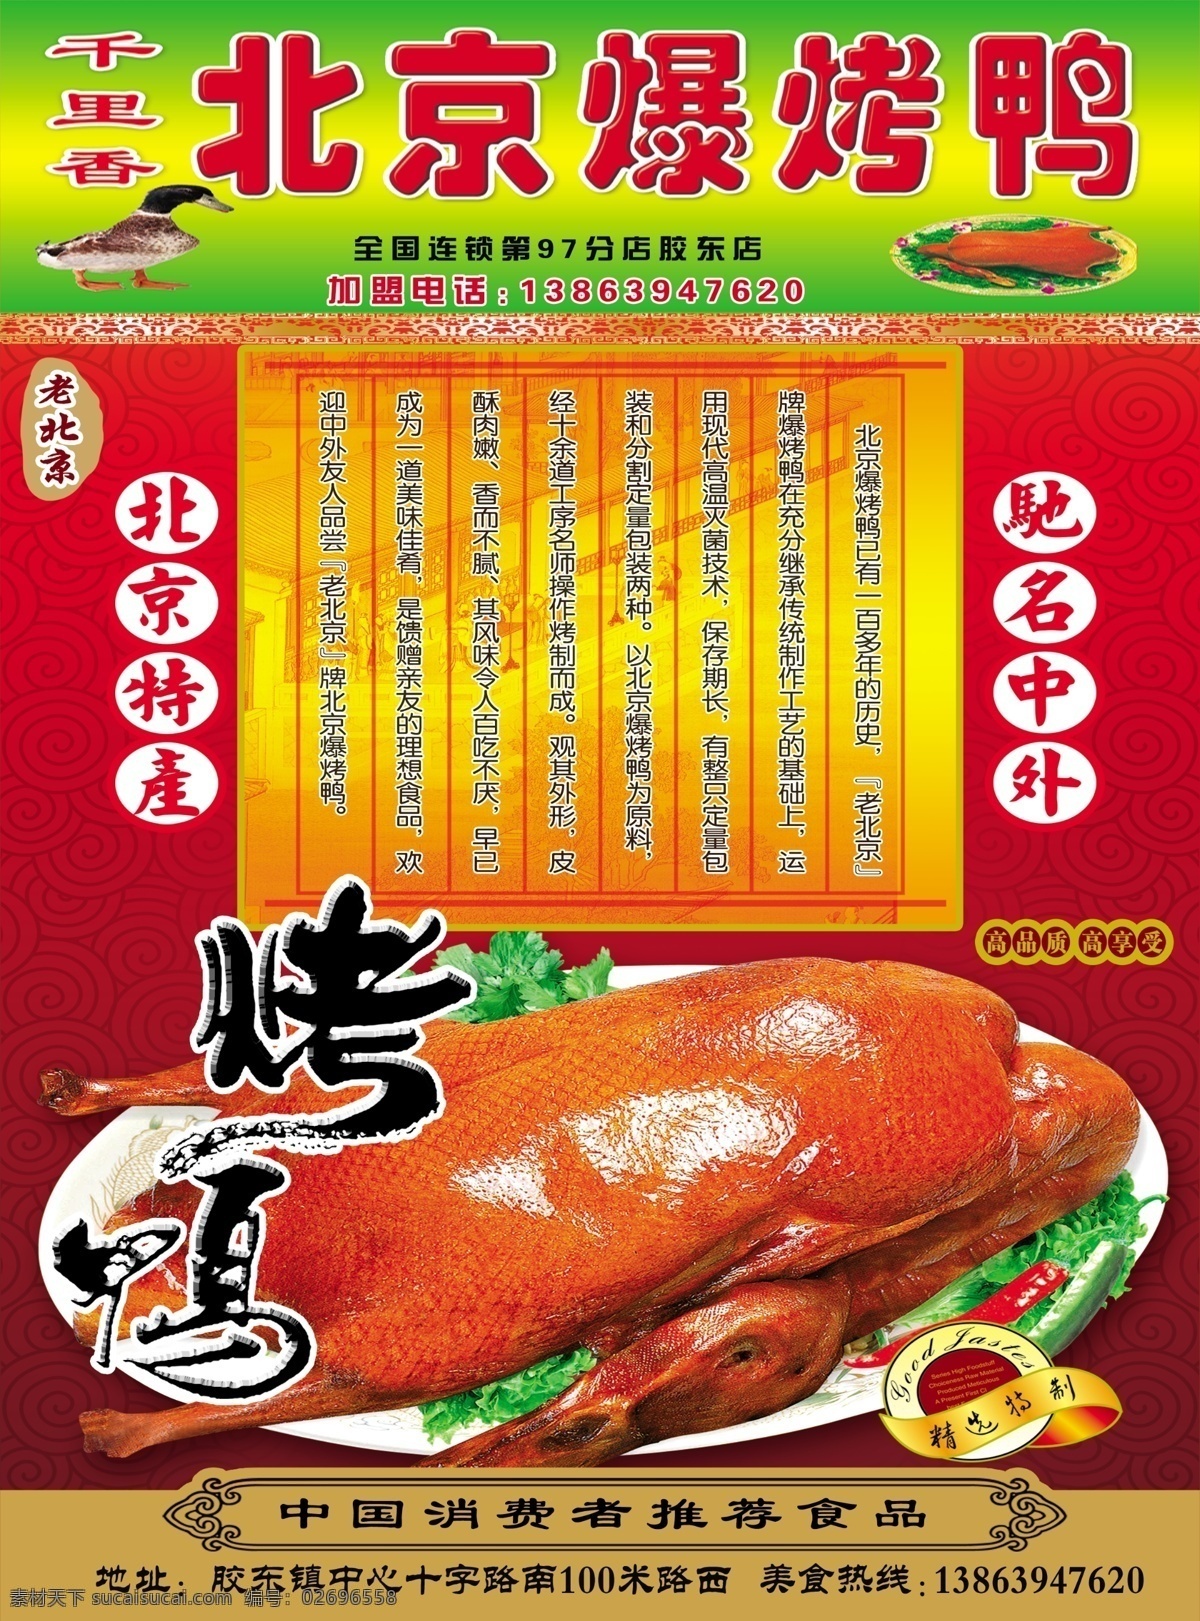 北京烤鸭 烤鸡单页 开业简介 烤鸭简介 盛大开业 dm宣传单